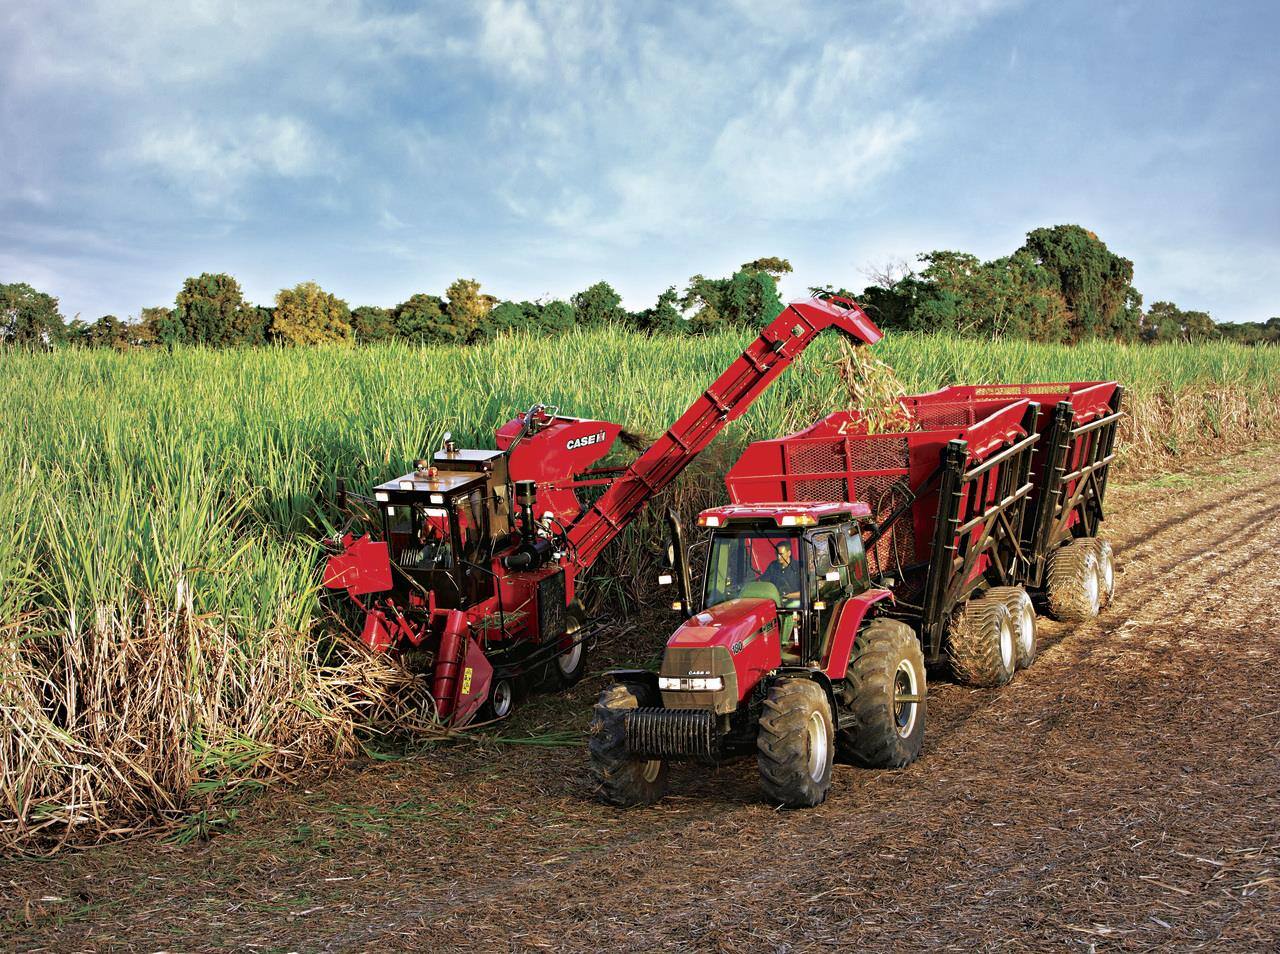 Sugar Cane IH Harvester Highlights Formation of International Harvester 